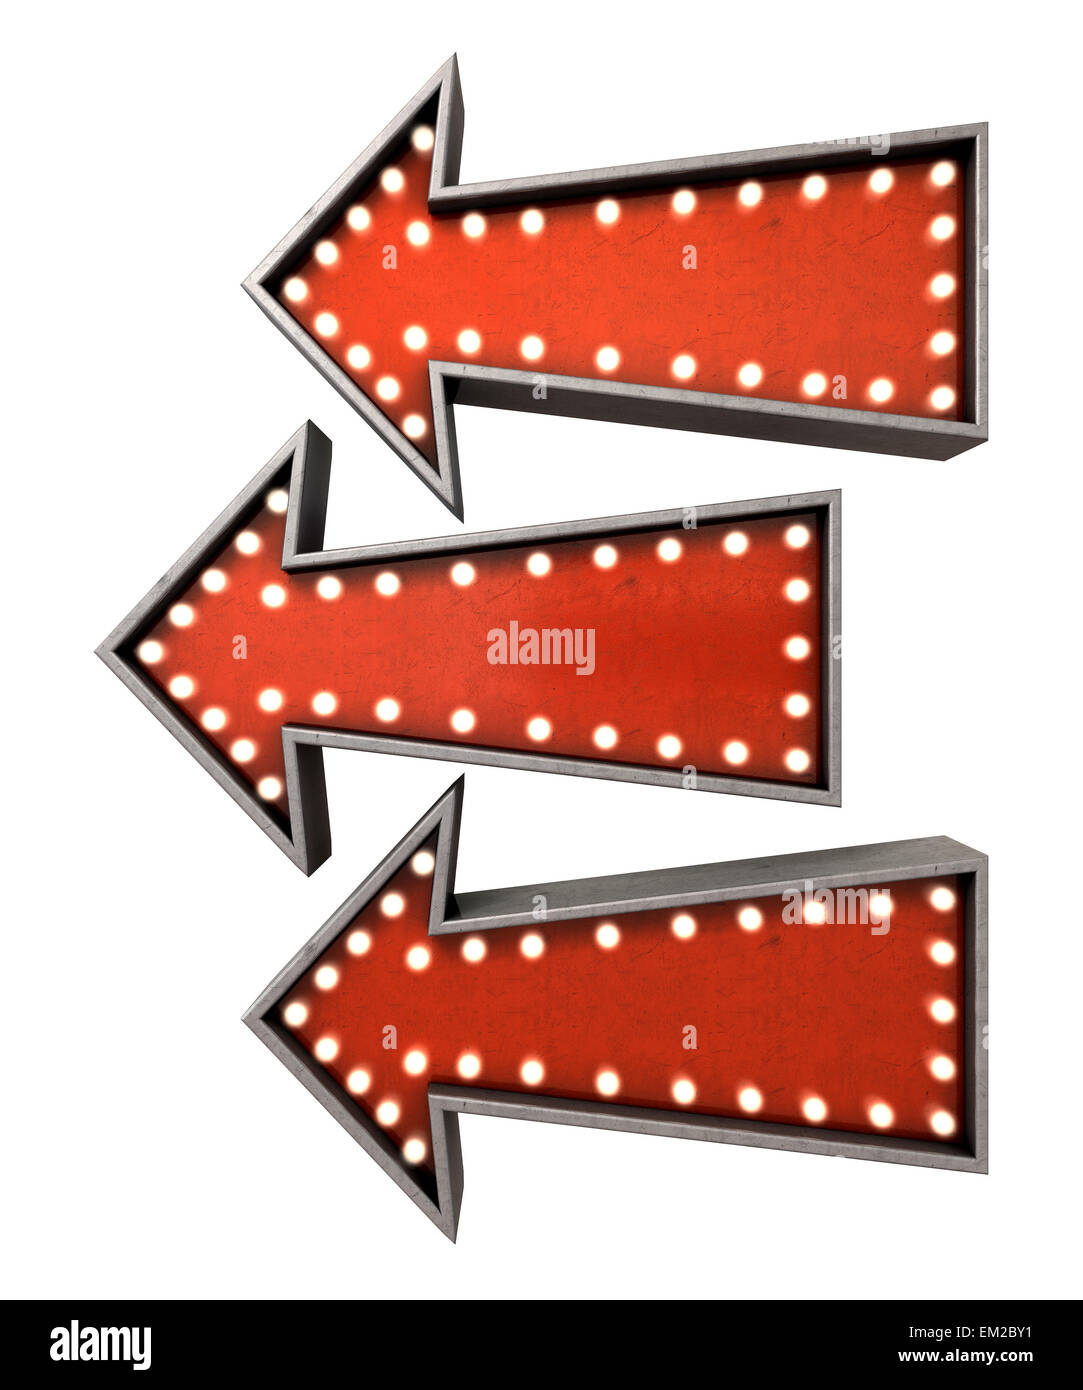 Una colección de 3 "belle epoque", rojo vintage signos de flecha iluminada por bombillas orientada en la misma dirección en una aislada backg oscuro Foto de stock